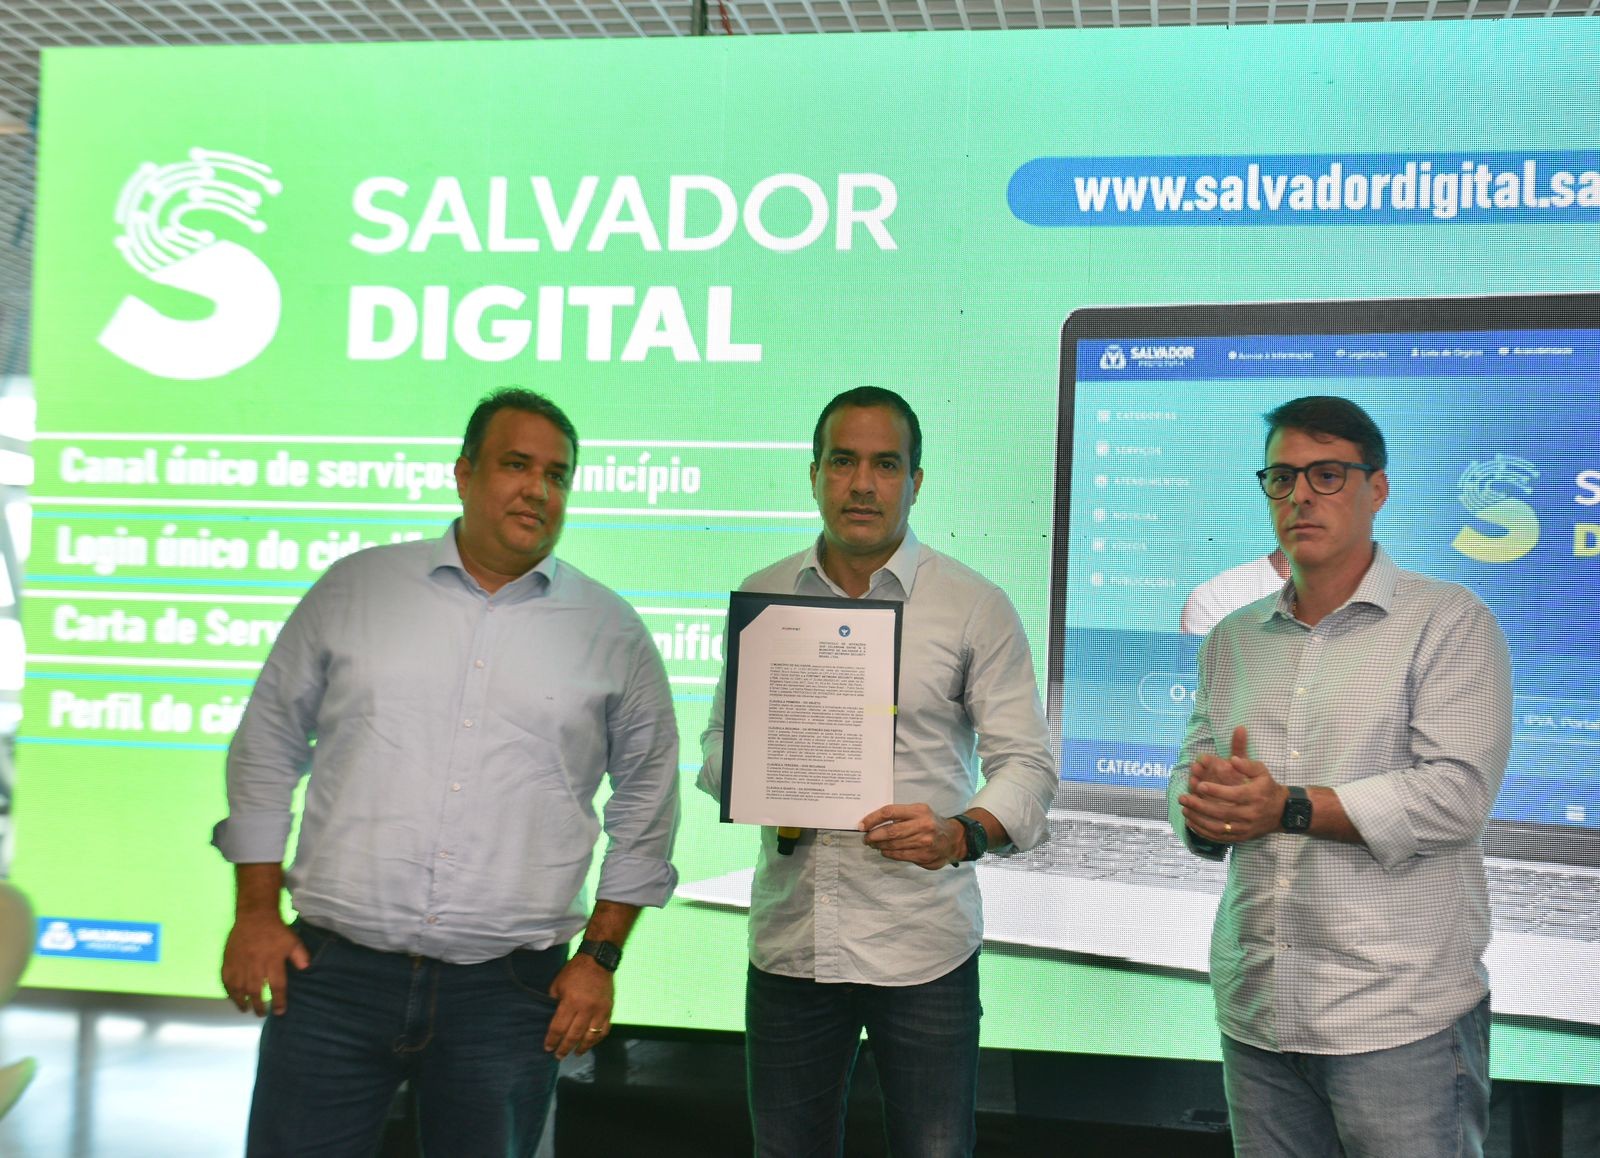 Prefeitura de Salvador lança nova plataforma digital de serviços e atendimento à população; saiba como acessar